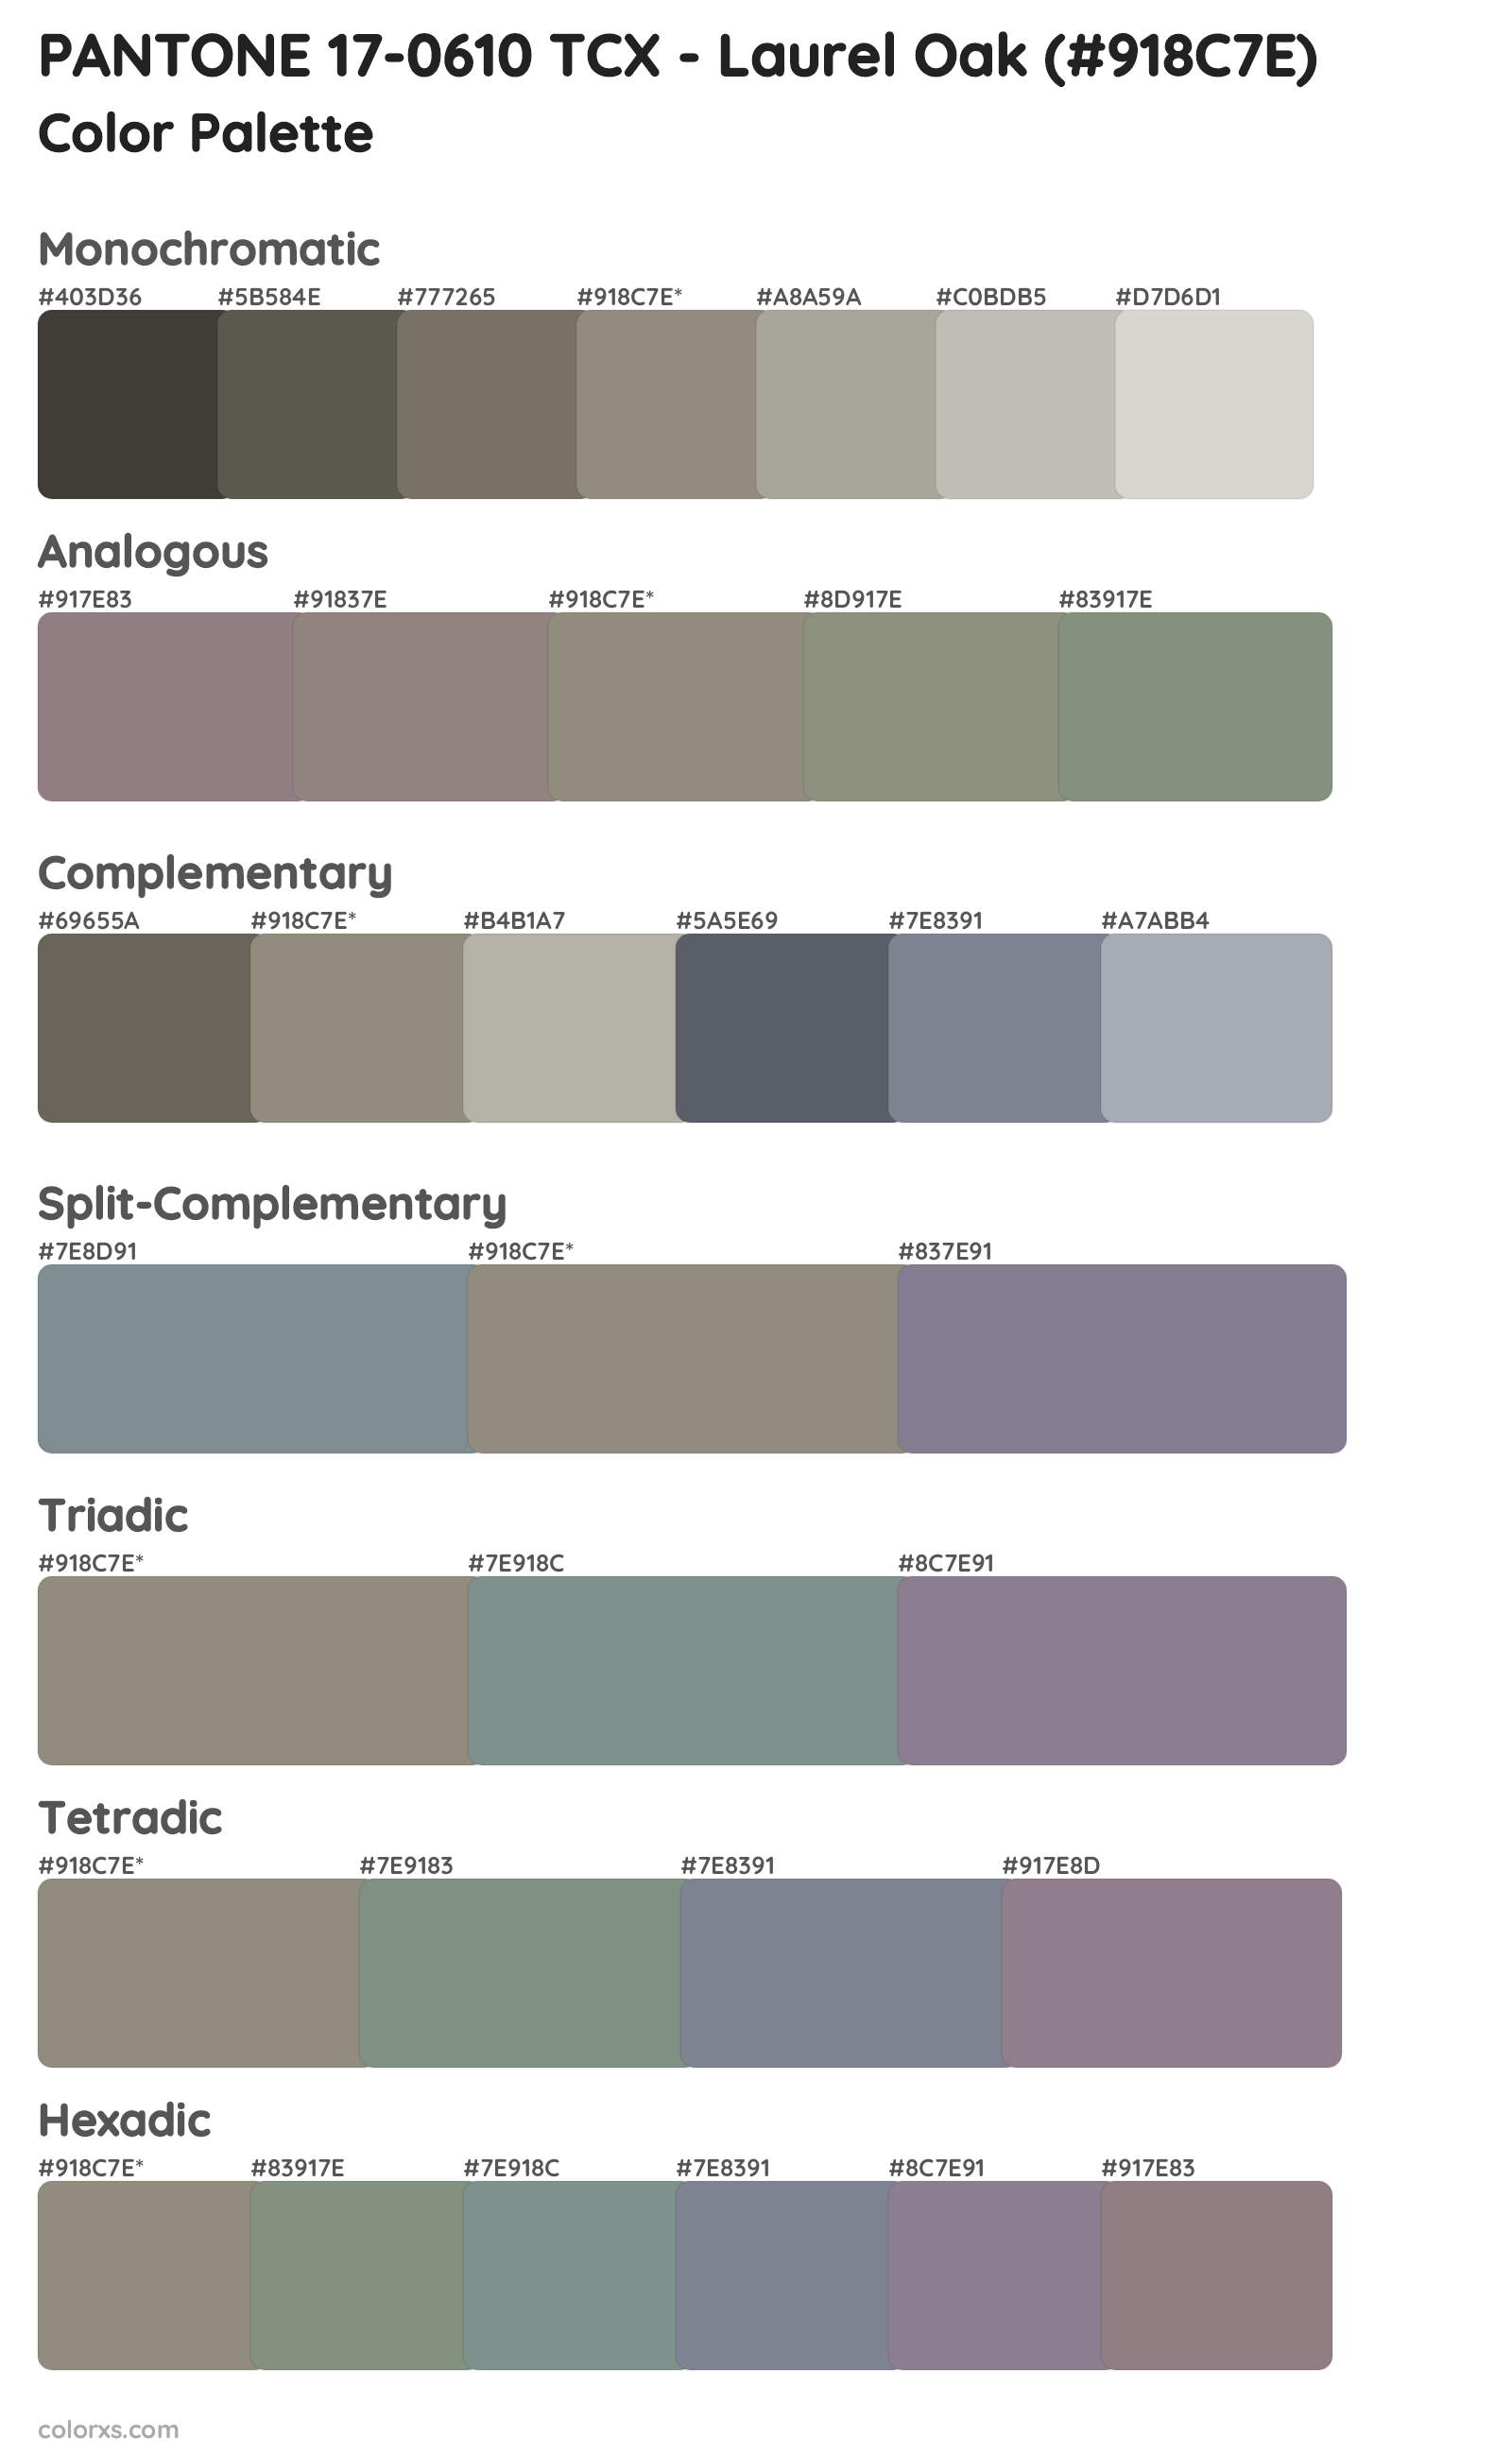 PANTONE 17-0610 TCX - Laurel Oak Color Scheme Palettes